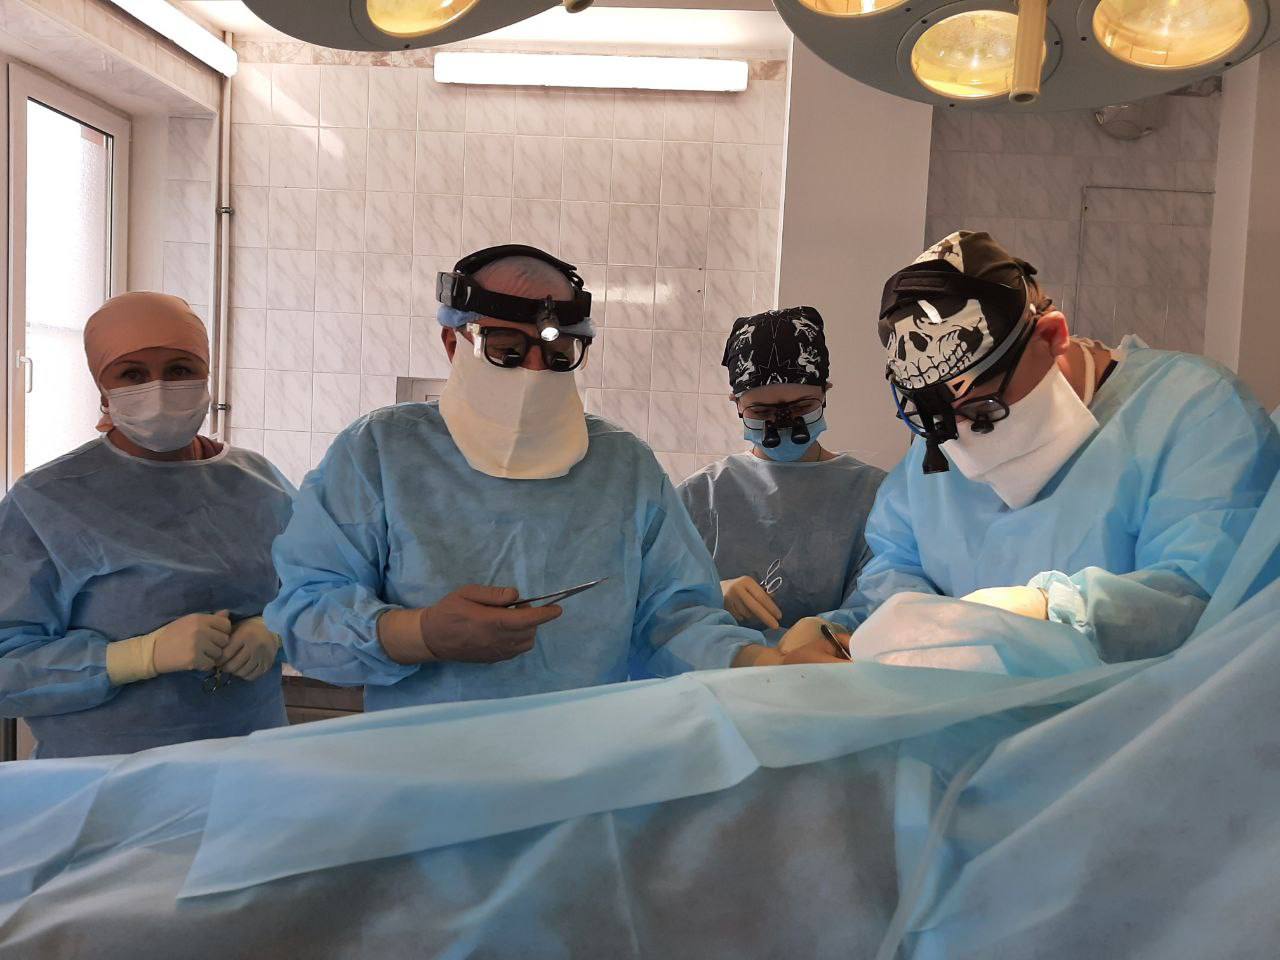 Хирурги Ростовского медицинского университета помогли восстановить движения руки у пациента после тяжёлой травмы 3